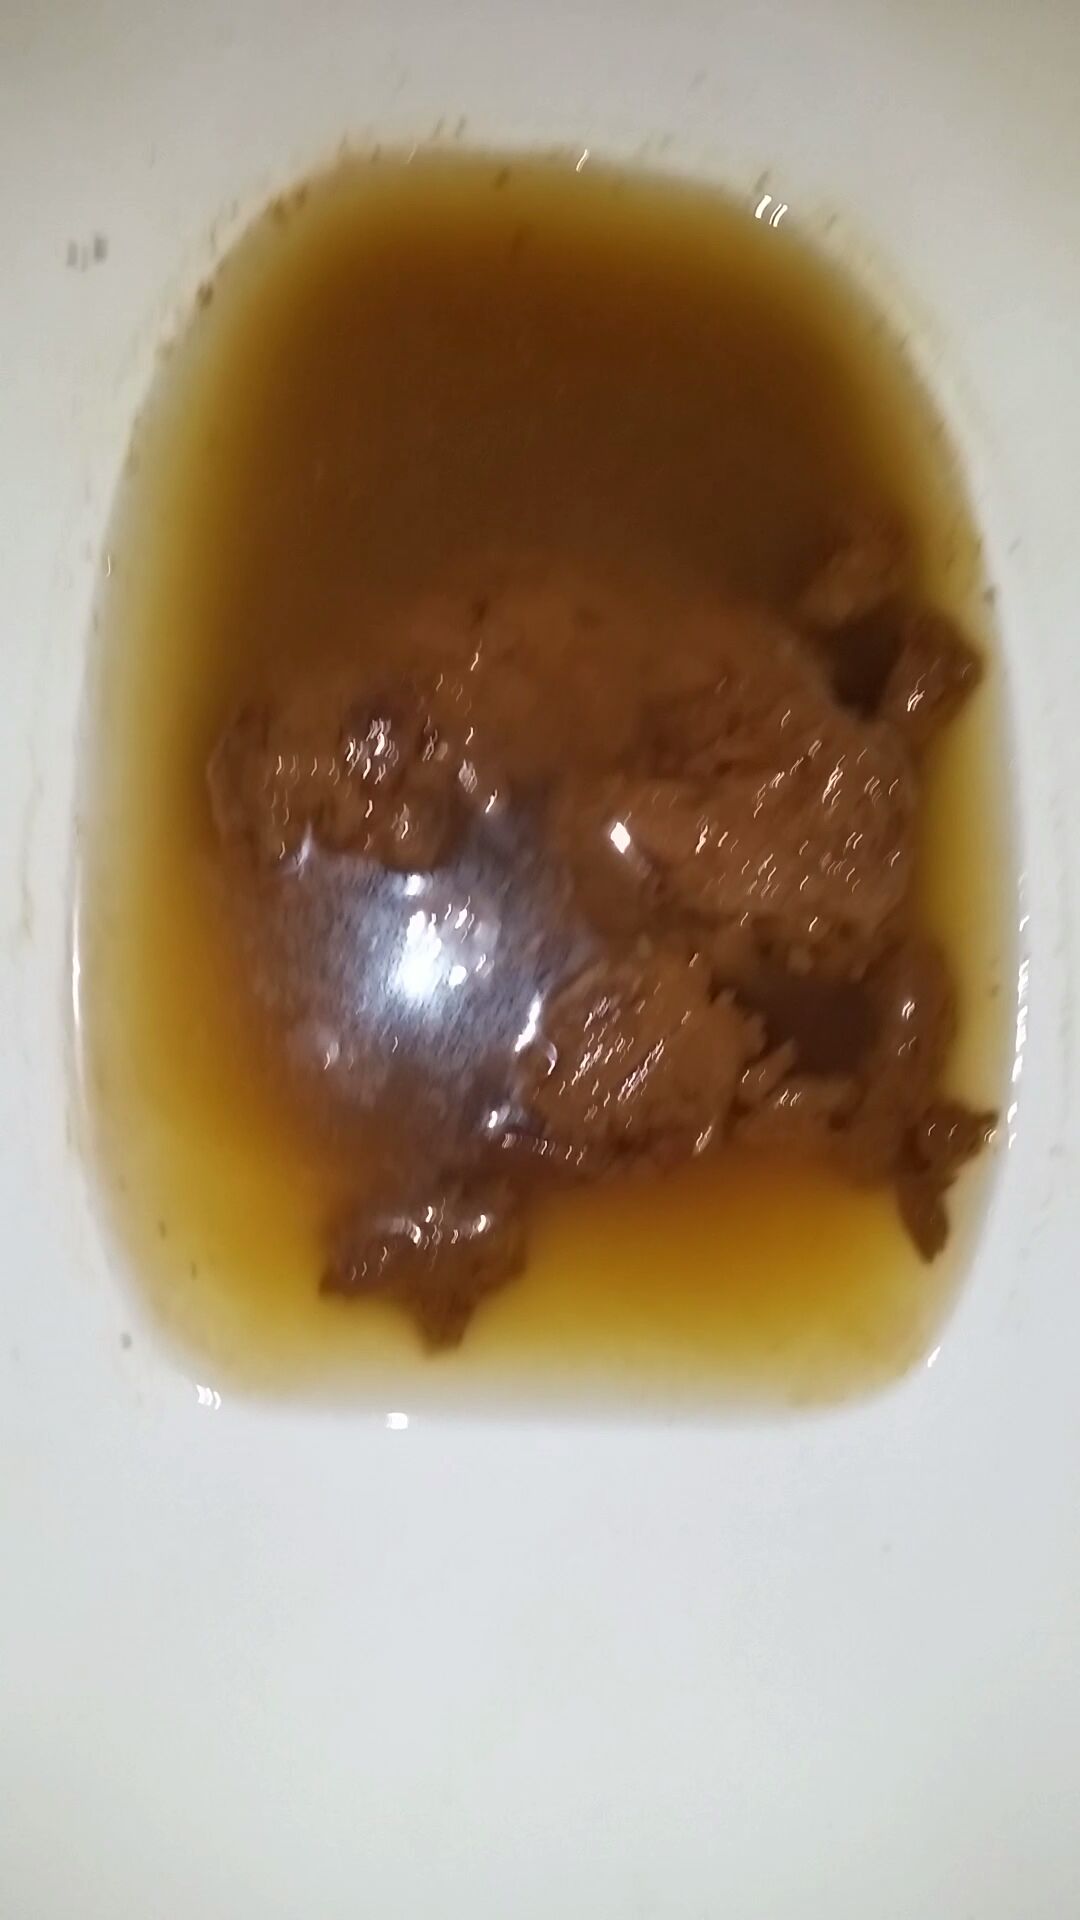 Diarrhea & poop